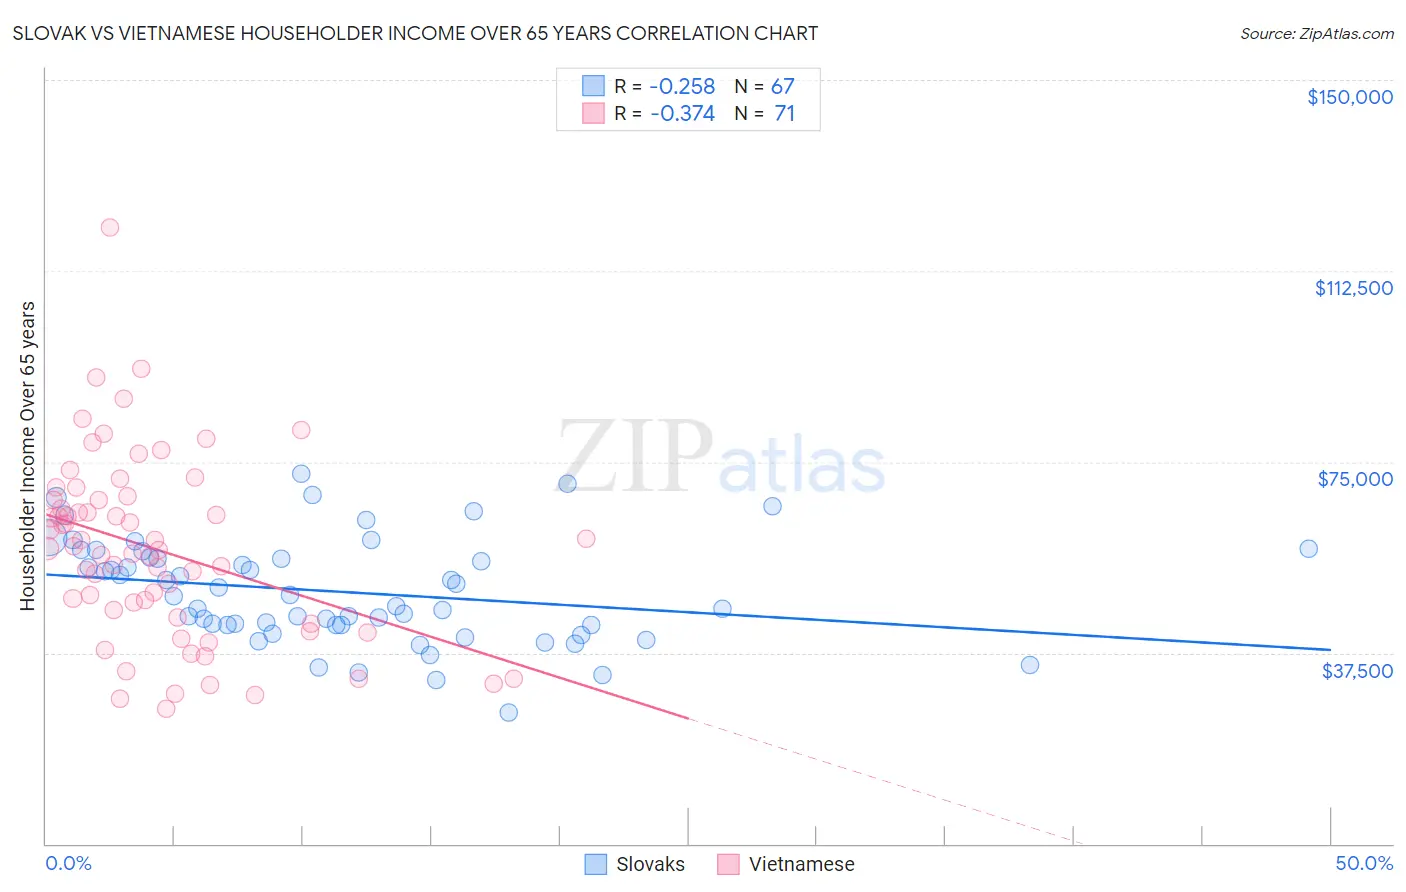 Slovak vs Vietnamese Householder Income Over 65 years